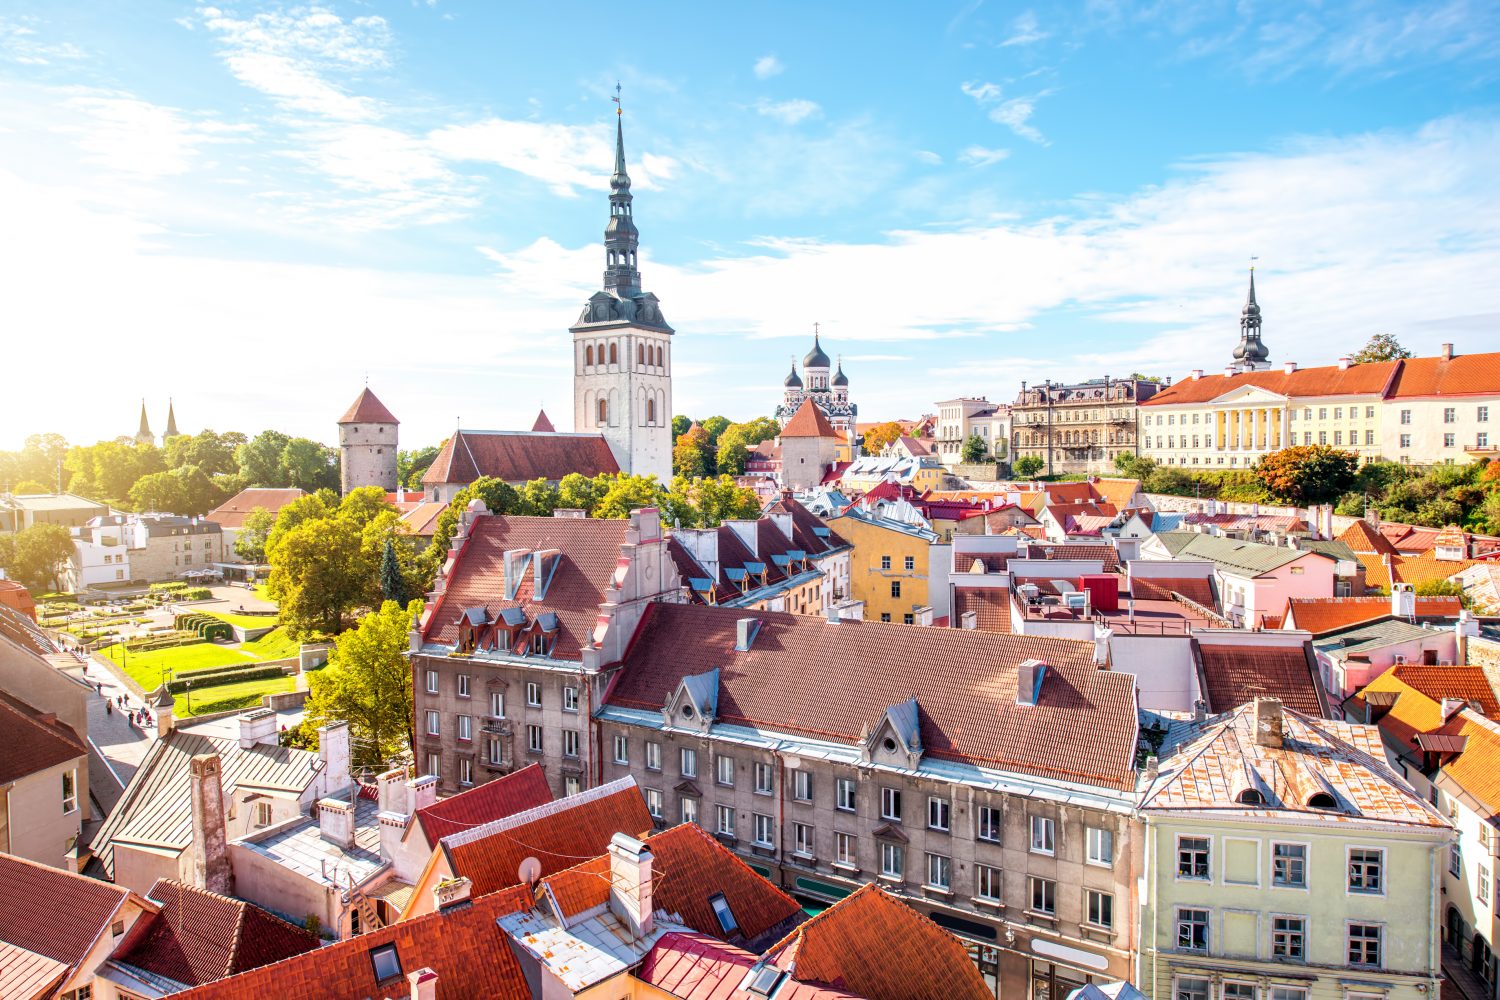 Tallinn capital of Estonia